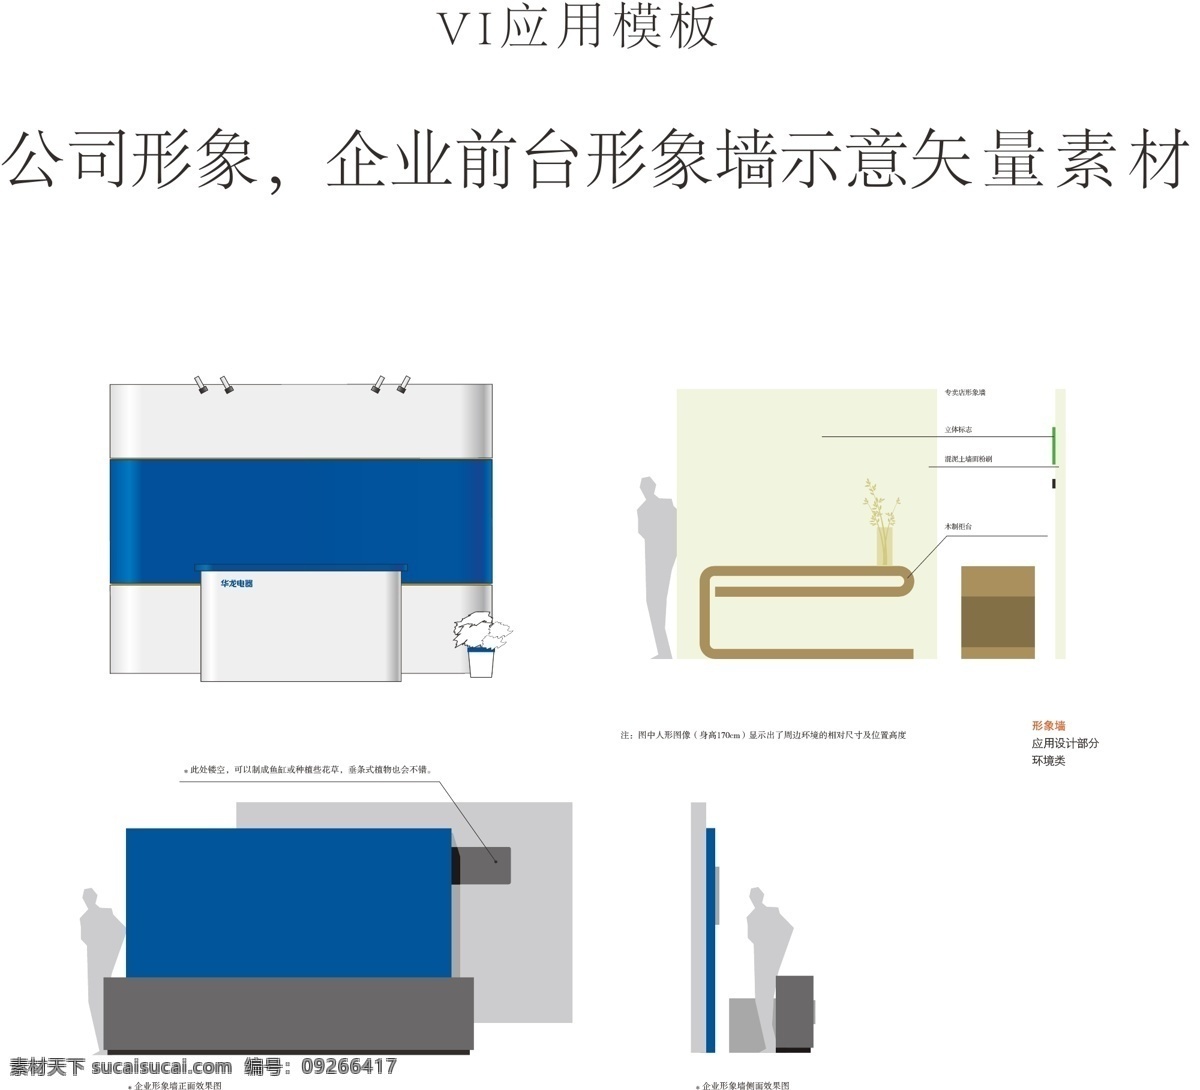 公司 形象 墙 示意 矢量 公司形象 企业前台 形象墙 矢量素材 vi系统应用 vi vi设计